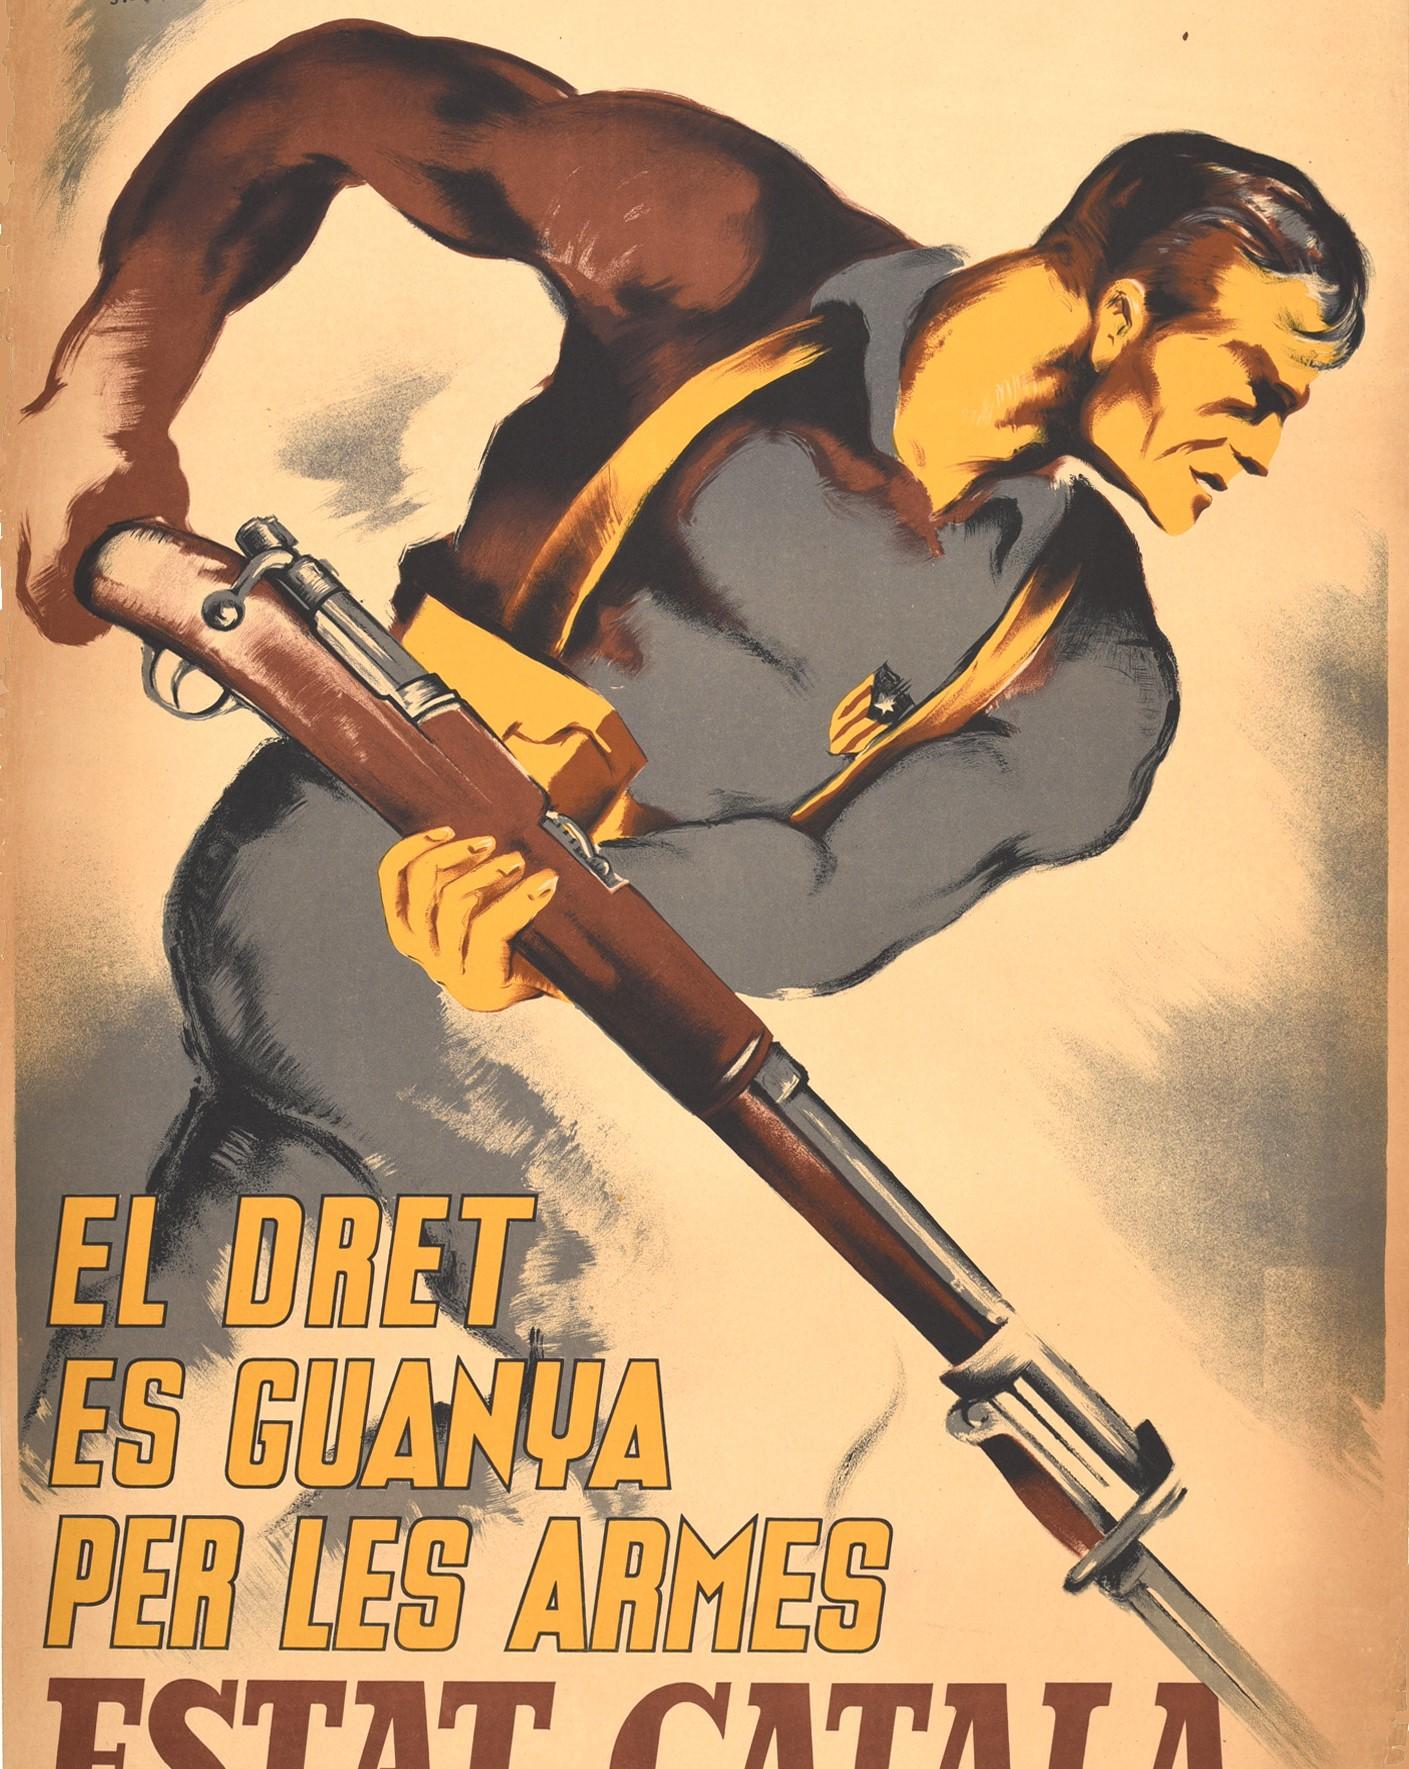 Originales Propagandaplakat aus dem Spanischen Bürgerkrieg - Rechte werden durch die Waffen des katalanischen Staates errungen / El Dret es Guanya per les Armes Estat Catala - mit einem dynamischen Bild eines Mannes, der die blaue Flagge der